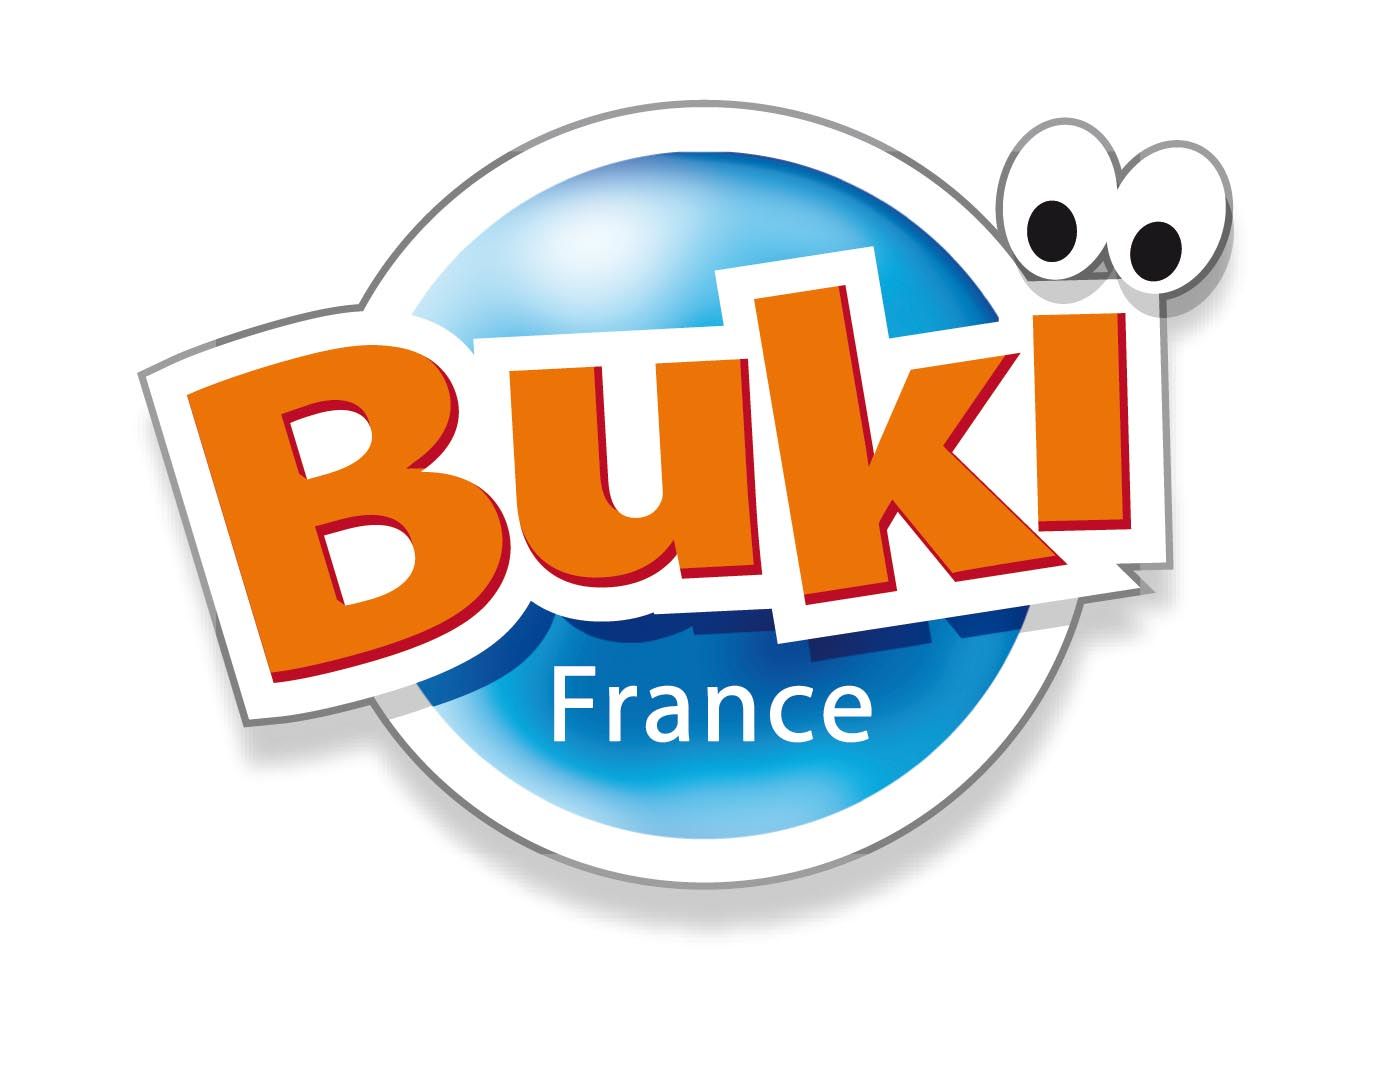 Buki France 